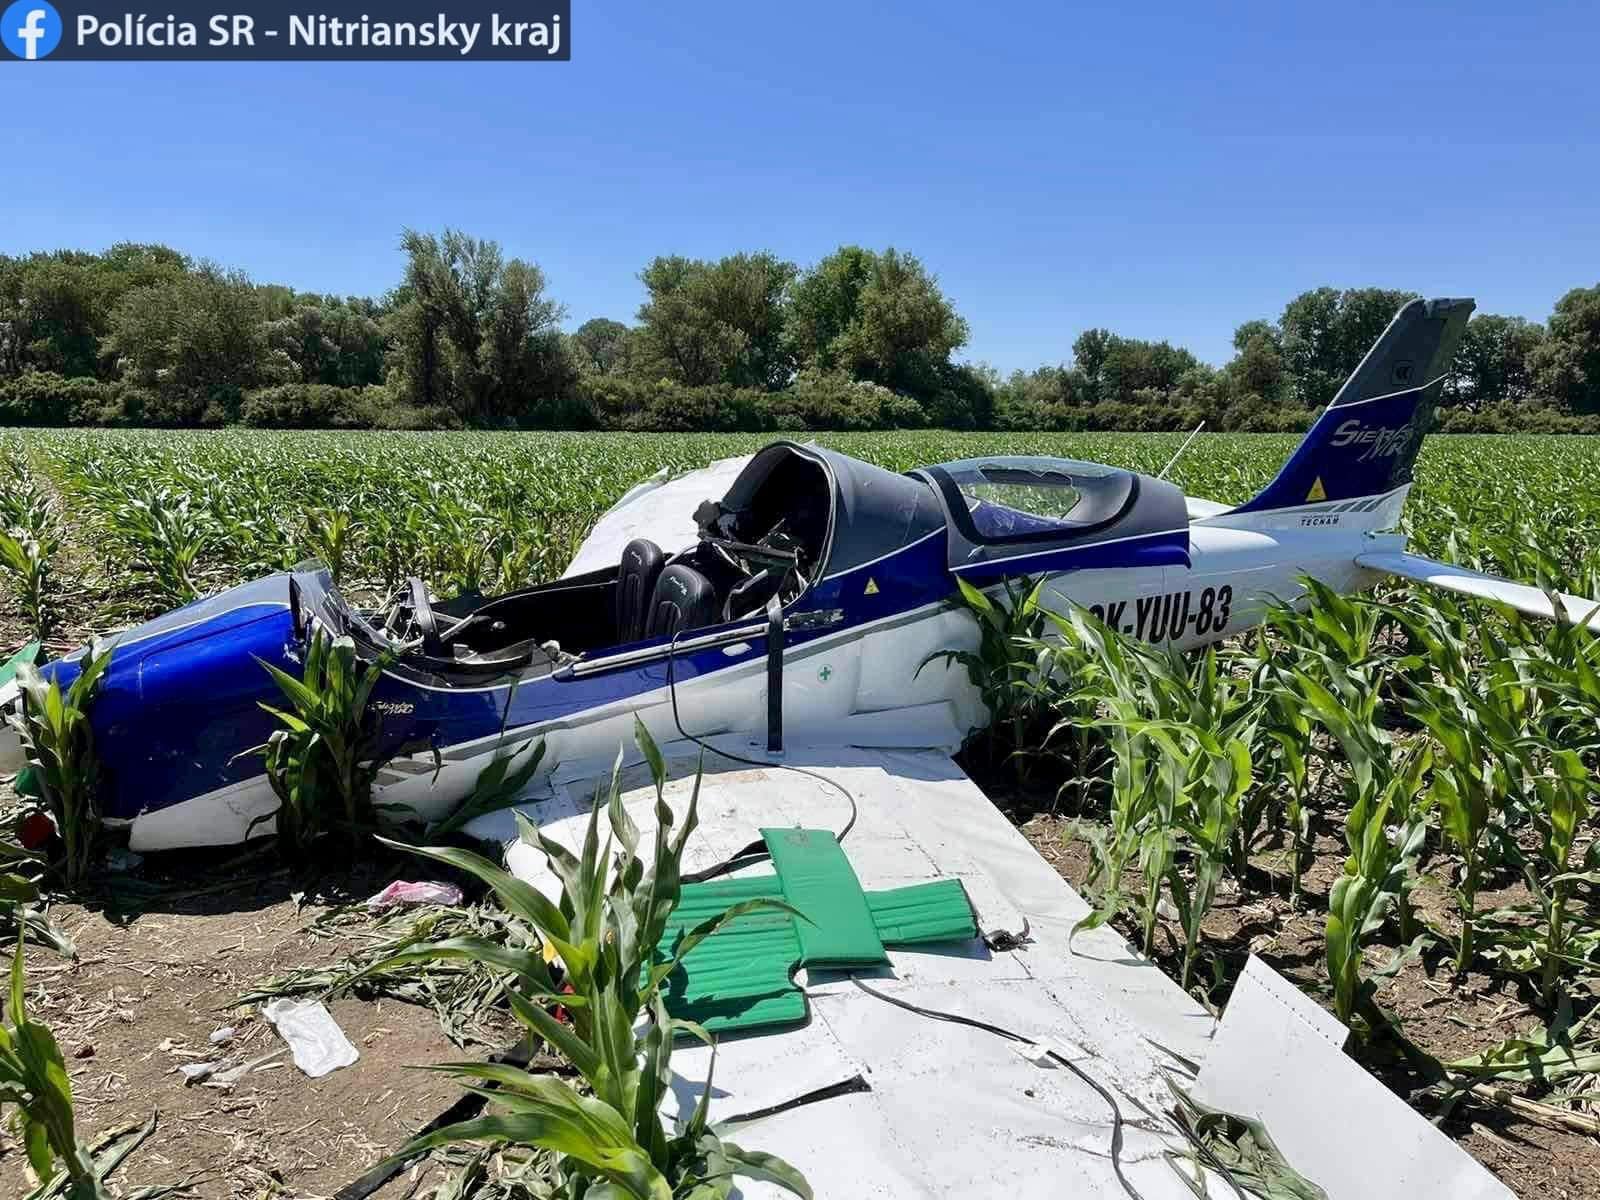 Вчора близько 11.20 ранку, всі рятувальні команди були відправлені на місце падіння малого спортивного літака, який впав на кукурудзяне поле в Комарно.